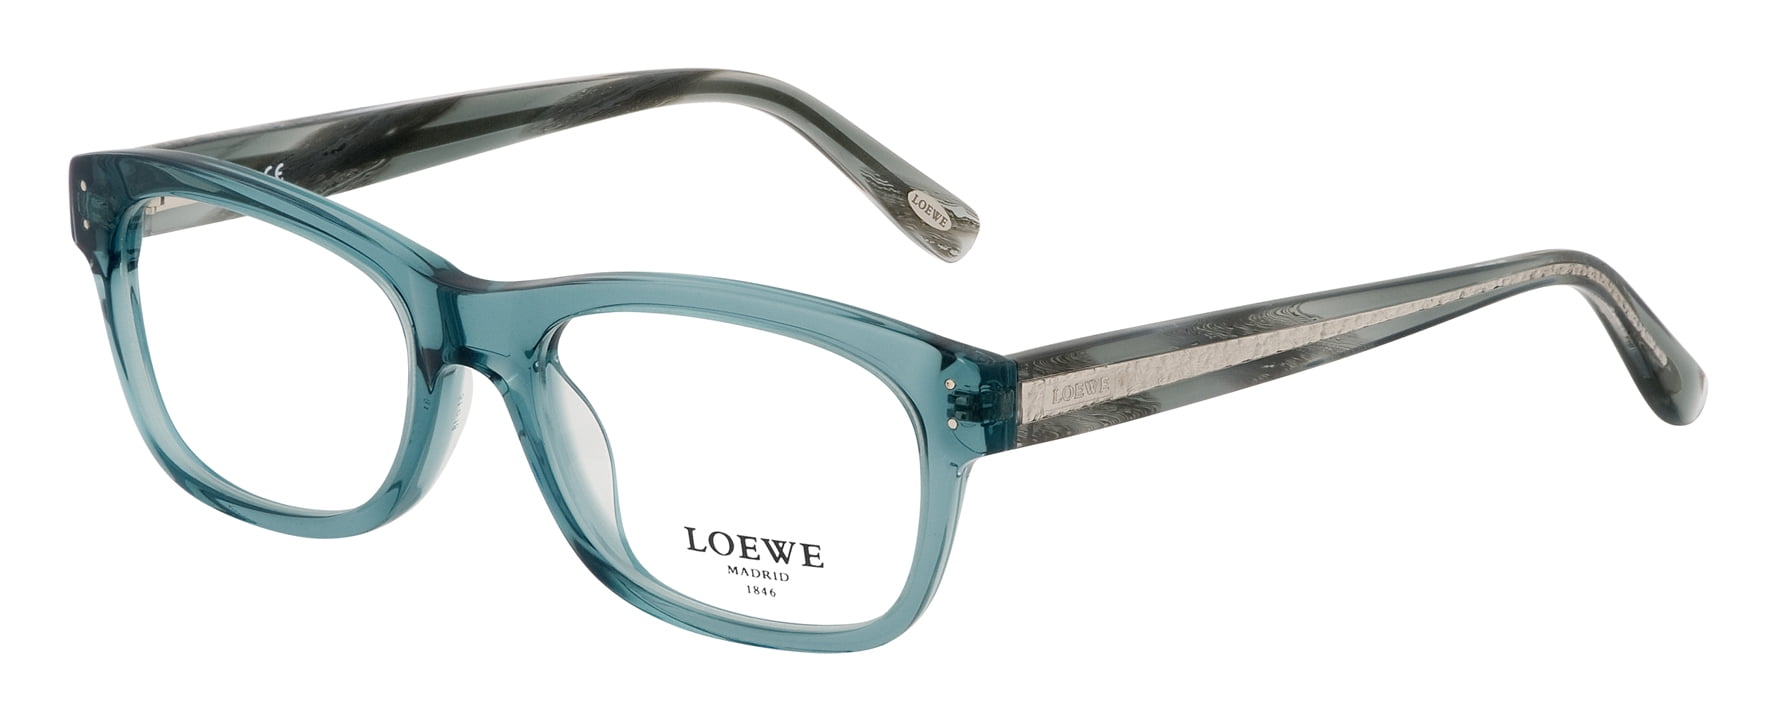 loewe eyeglasses